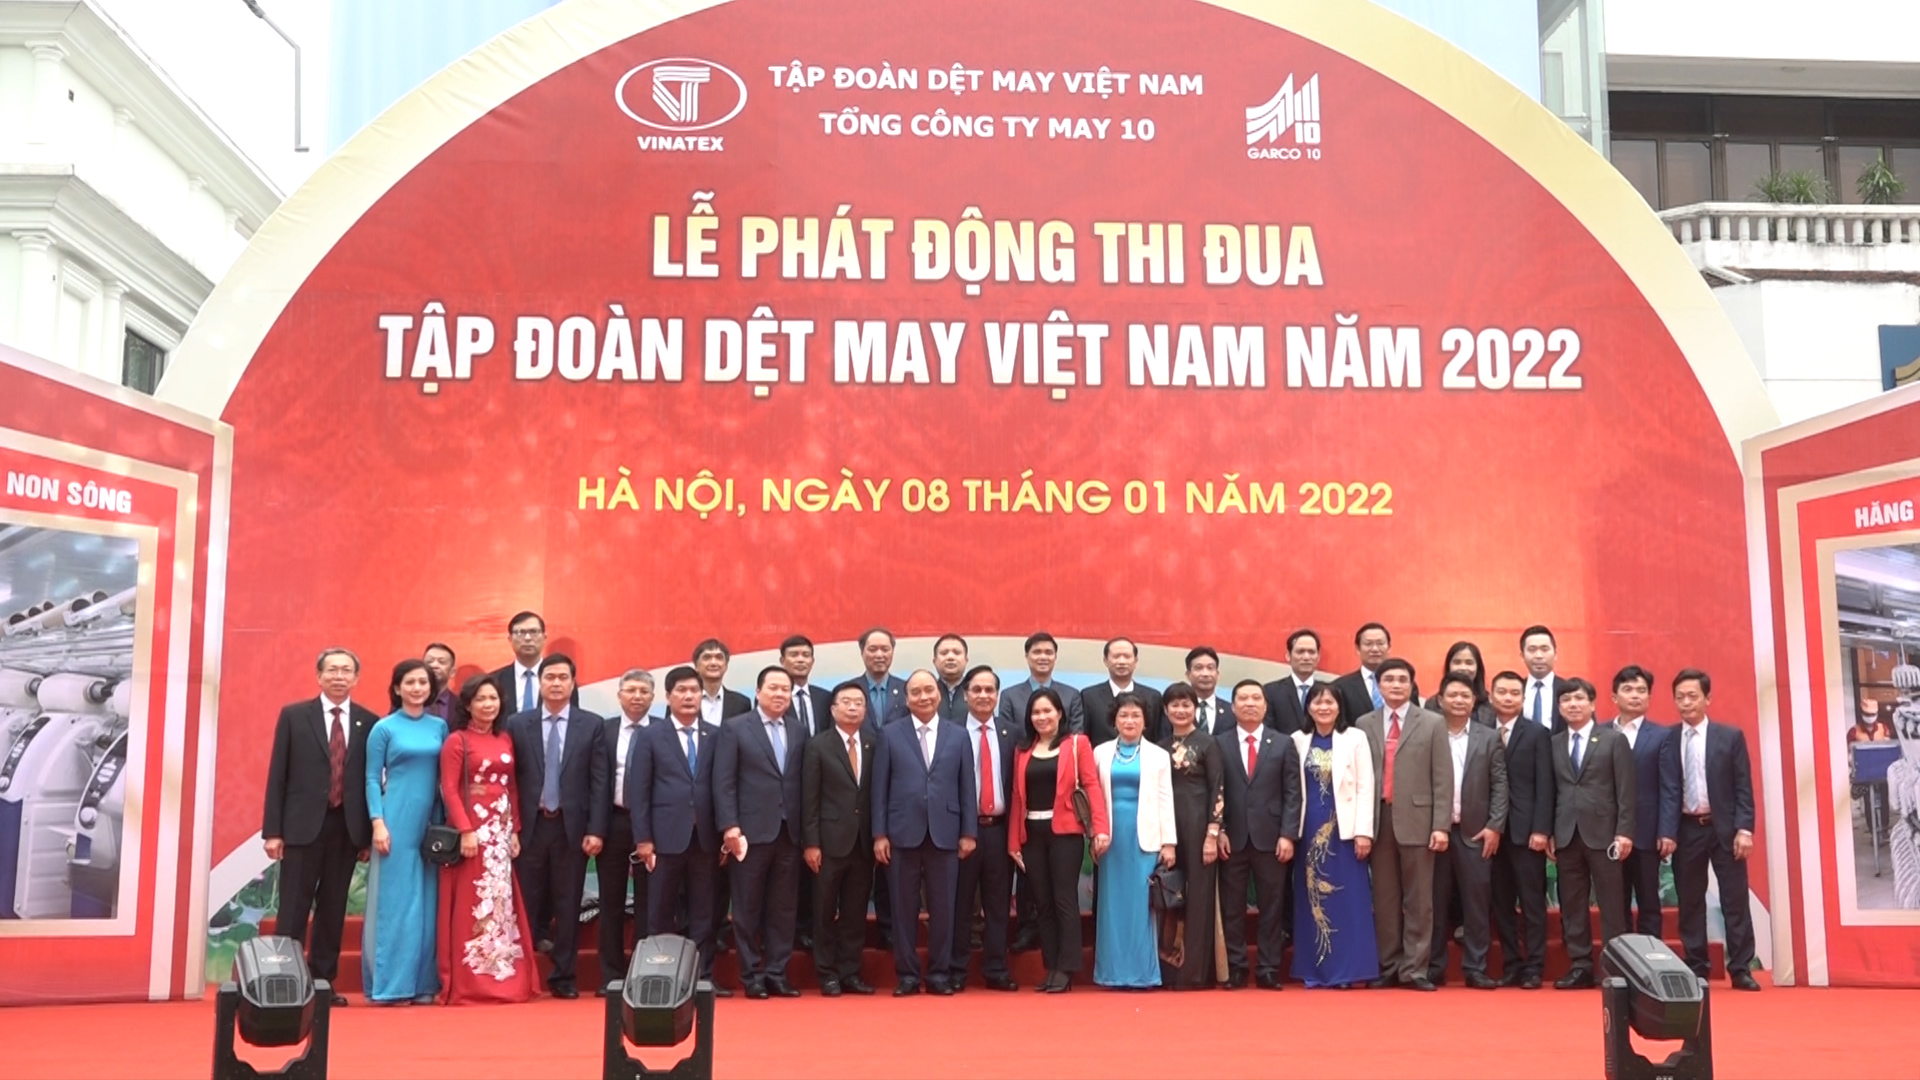 Chủ tịch nước Nguyễn Xuân Phúc dự Lễ phát động thi đua năm 2022 của Tập đoàn Dệt May Việt Nam và thăm May 10